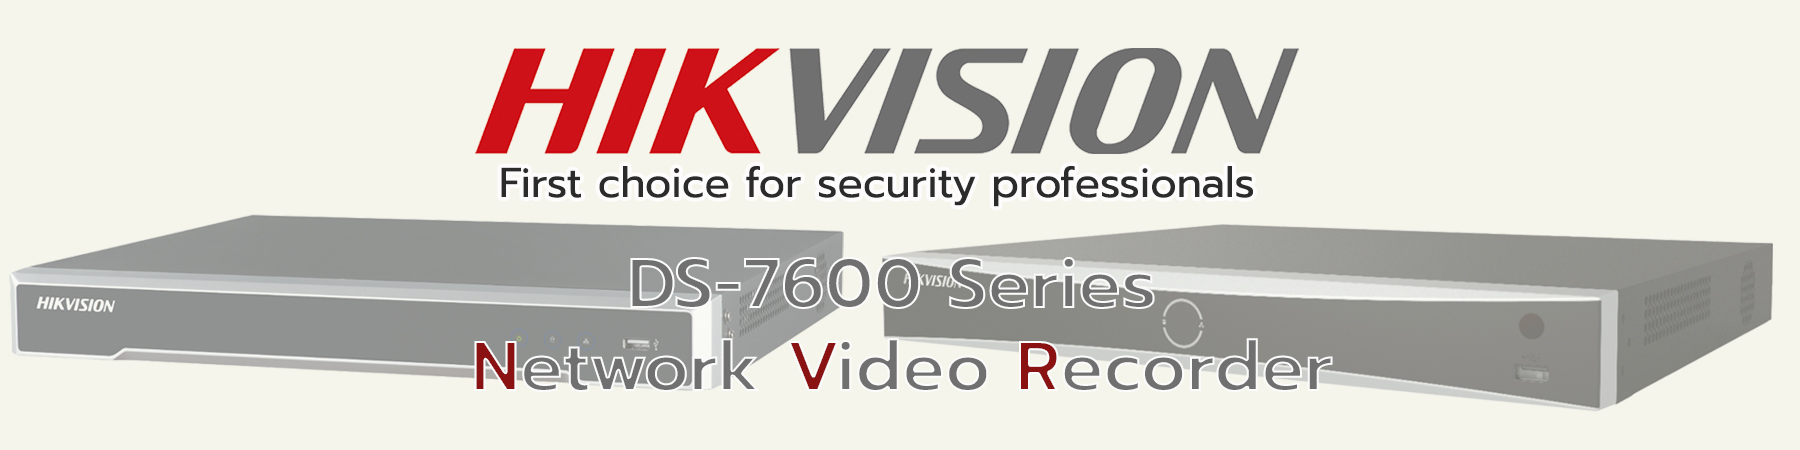 เครื่องบันทึก Hikvision NVR, เครื่องบันทึก Hikvision Network Video Recorder, Hikvision Acusense NVR, Hikvision Network Video Recorder, DS-7600 Series